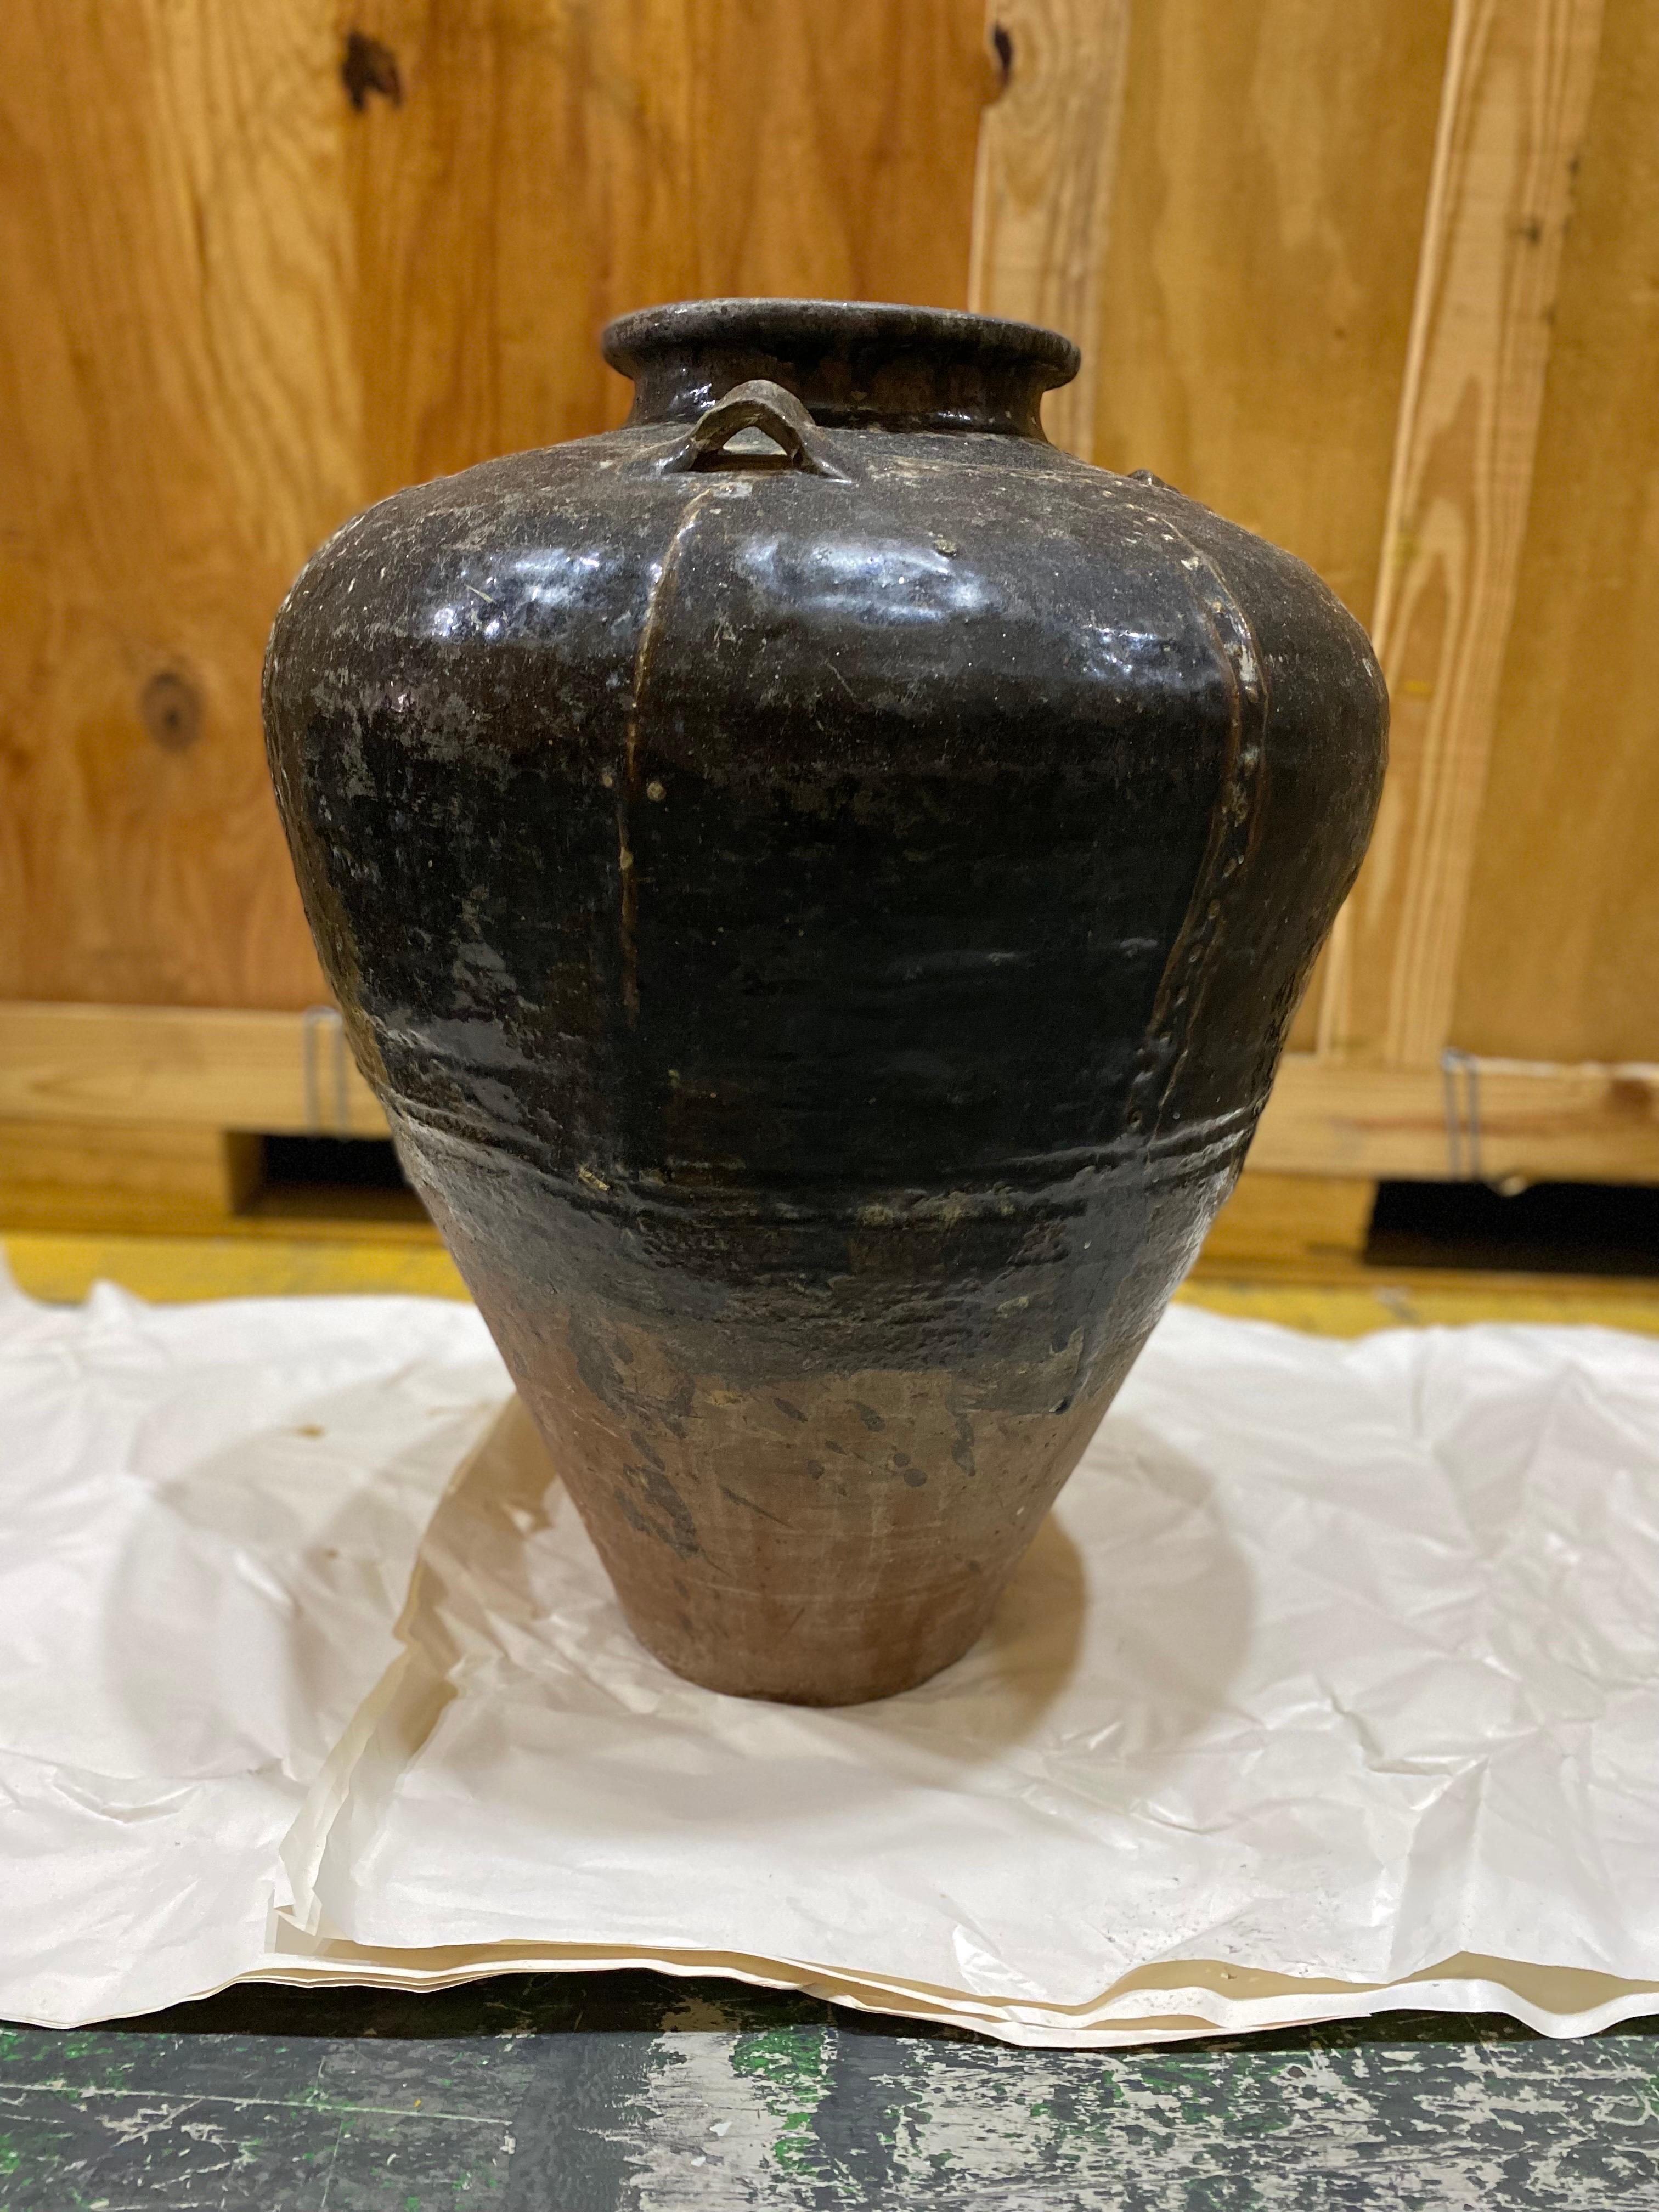 Un grand pot japonais du 19e siècle en terre cuite vernissée brune.
Une glaçure sombre sur une terre cuite partiellement non glacée. Un design intéressant et inhabituel qui ressemble à un travail de métal japonais. Bon état général. Une certaine